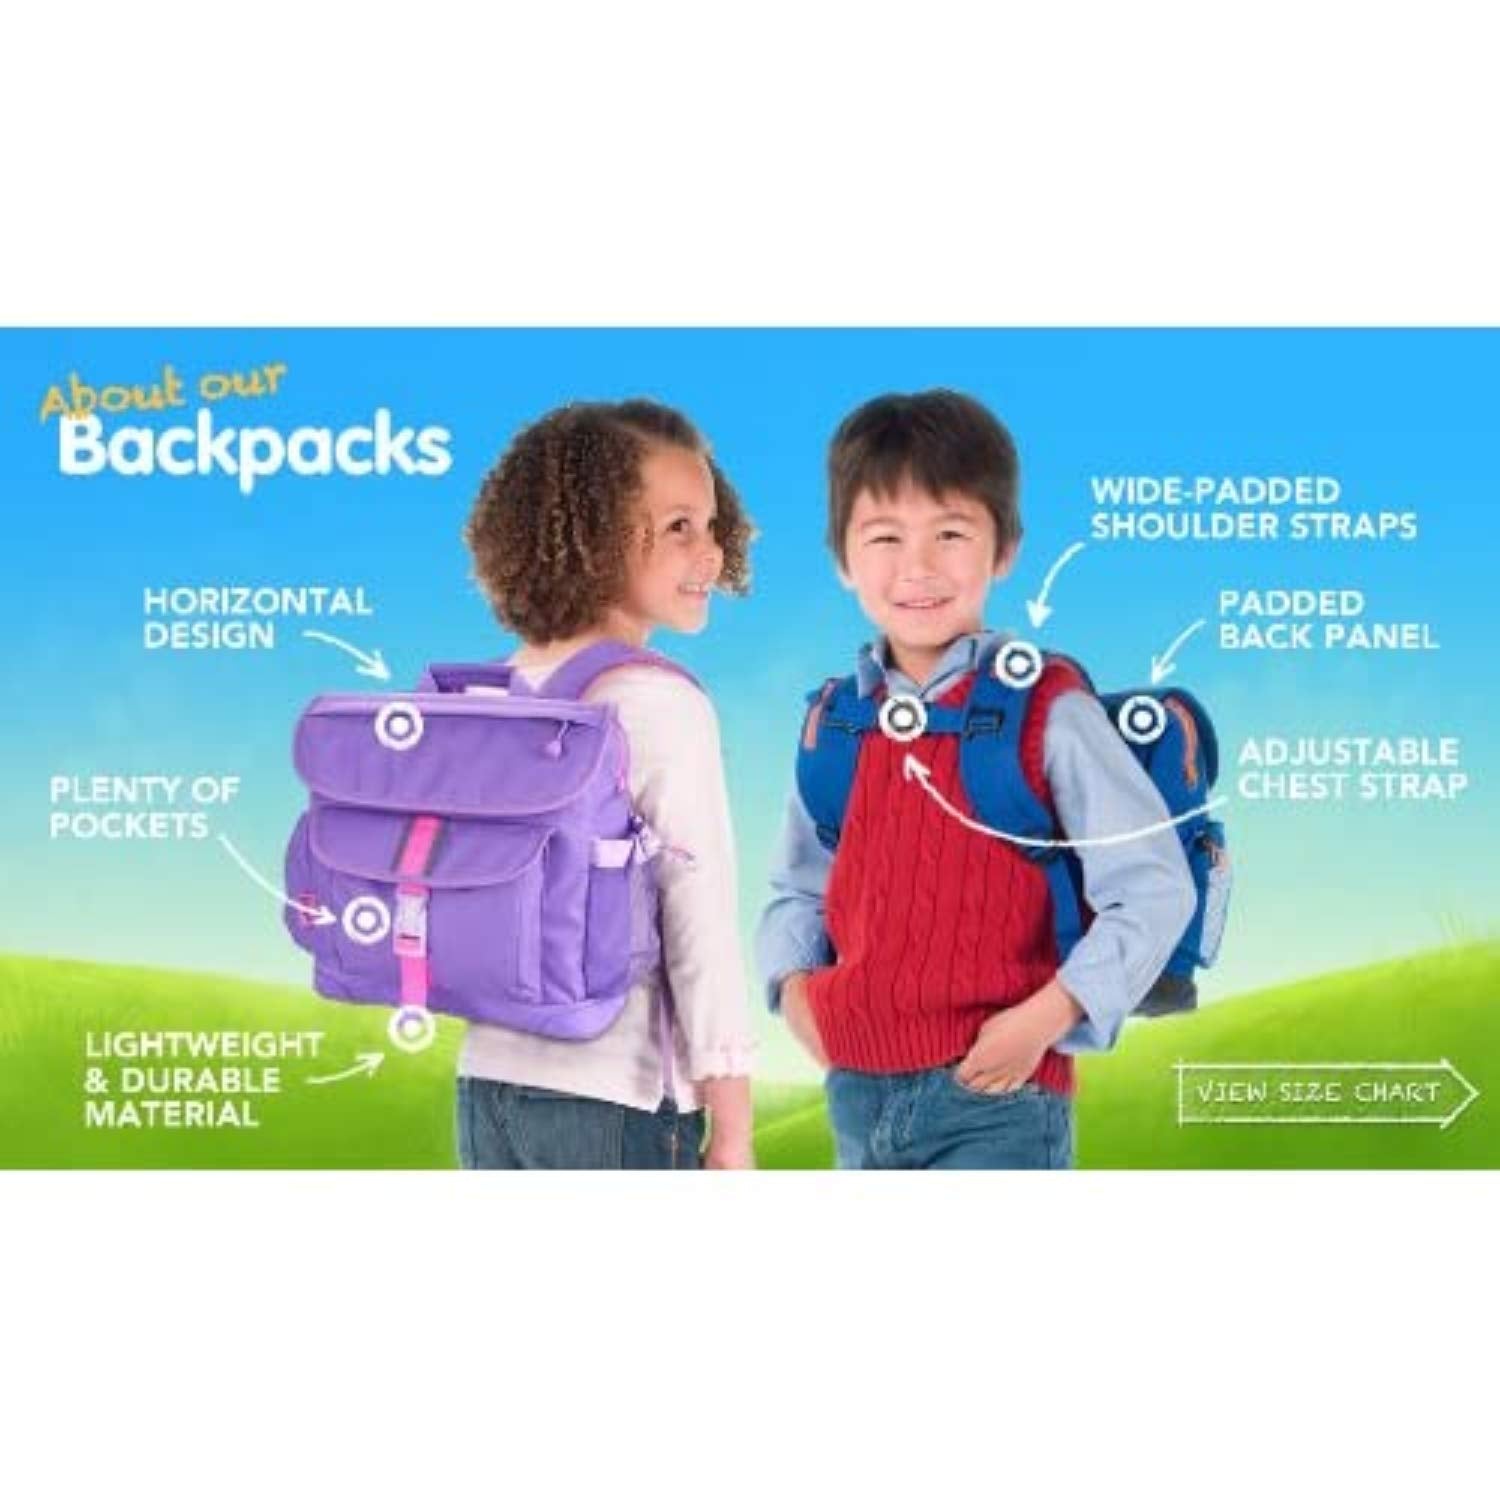  Bixbee Little Boy's Rocketflyer Backpack, Blue Rocket Bookbag  with Wings